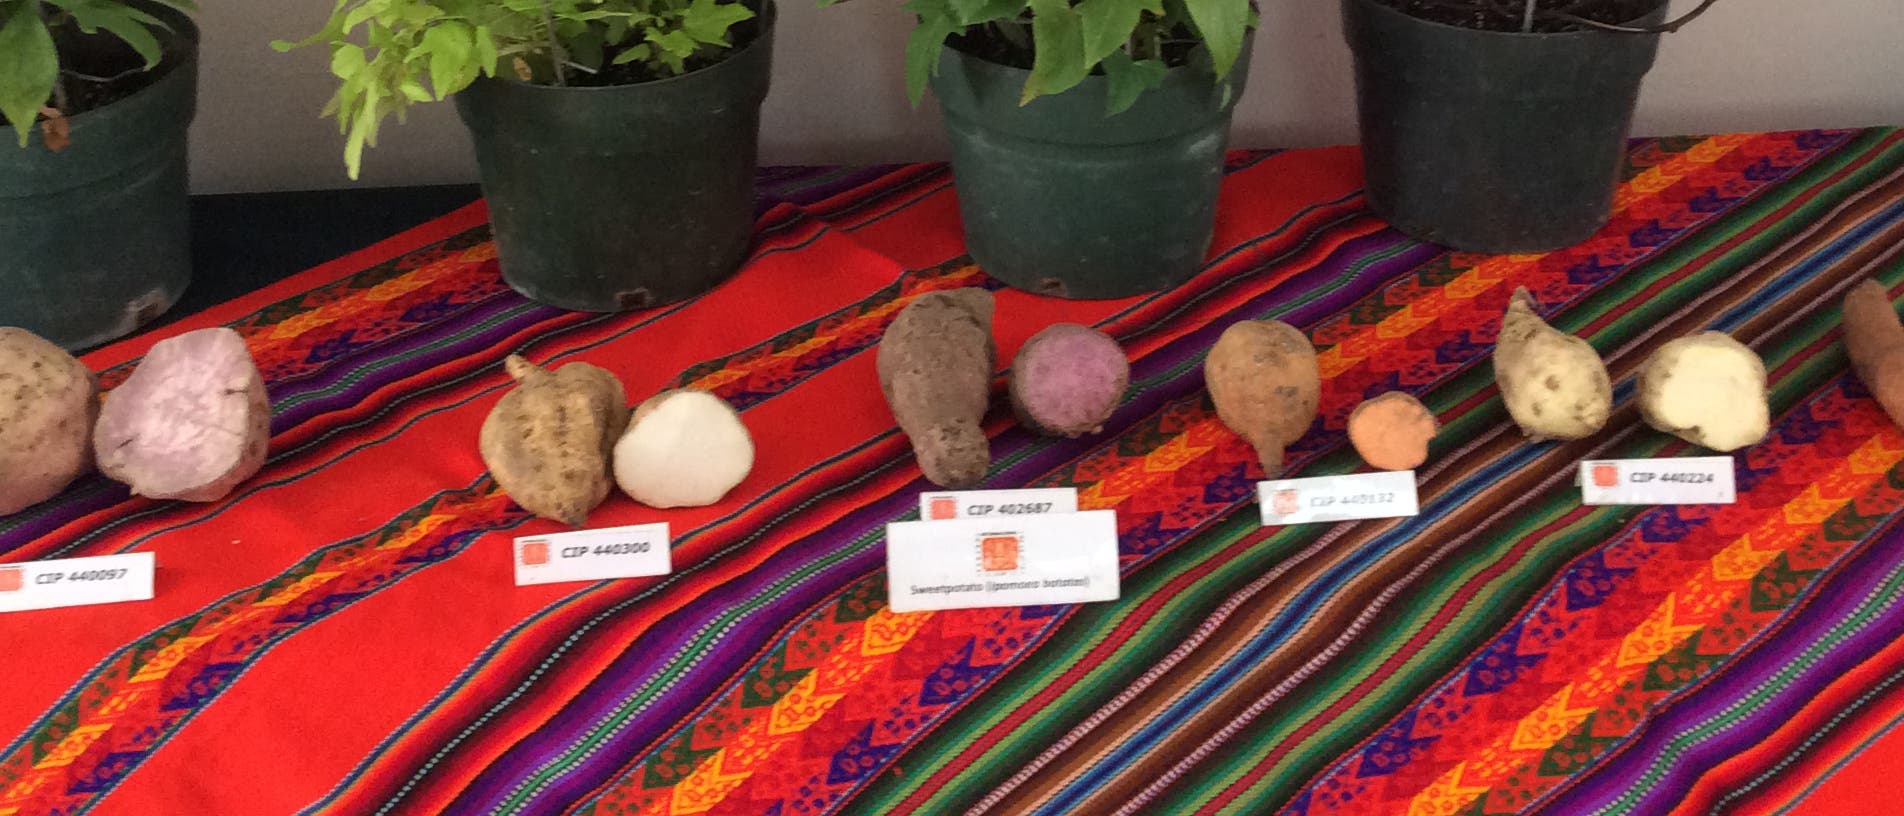 Verschiedene Süßkartoffelarten